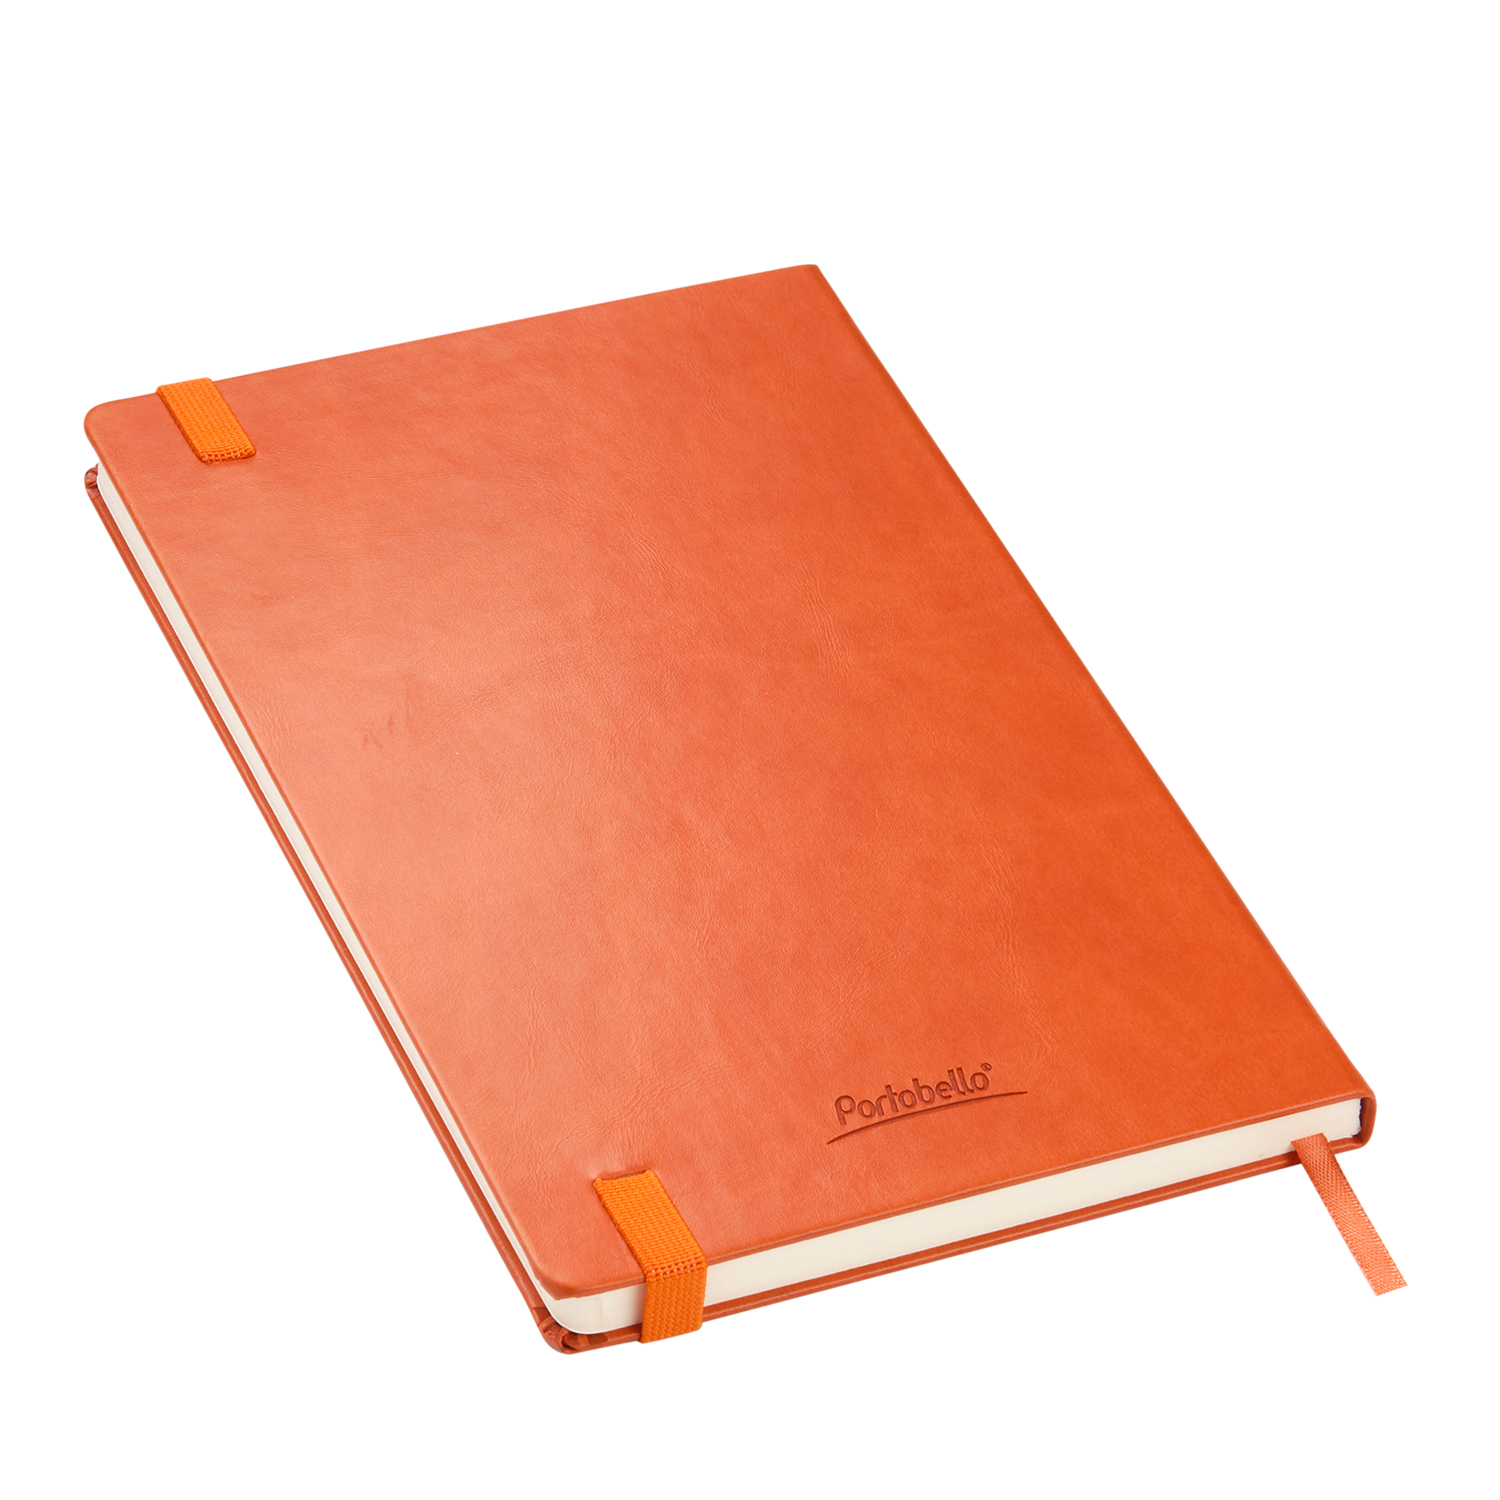 Ежедневник Portland BtoBook недатированный, оранжевый (без упаковки, без стикера)